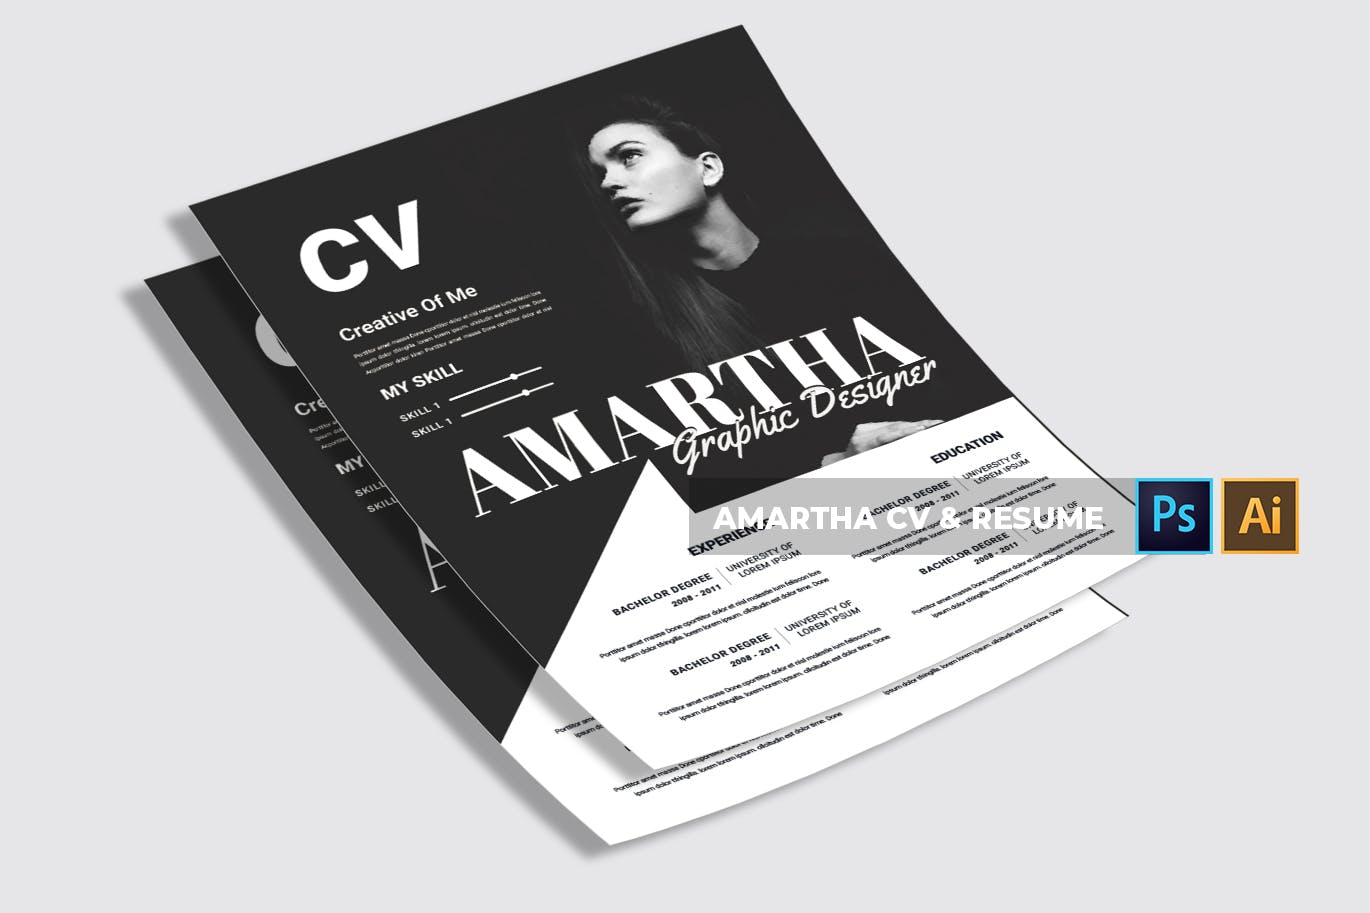 图形设计师/模特/时装设计师个人电子简历模板 Amartha | CV & Resume插图4